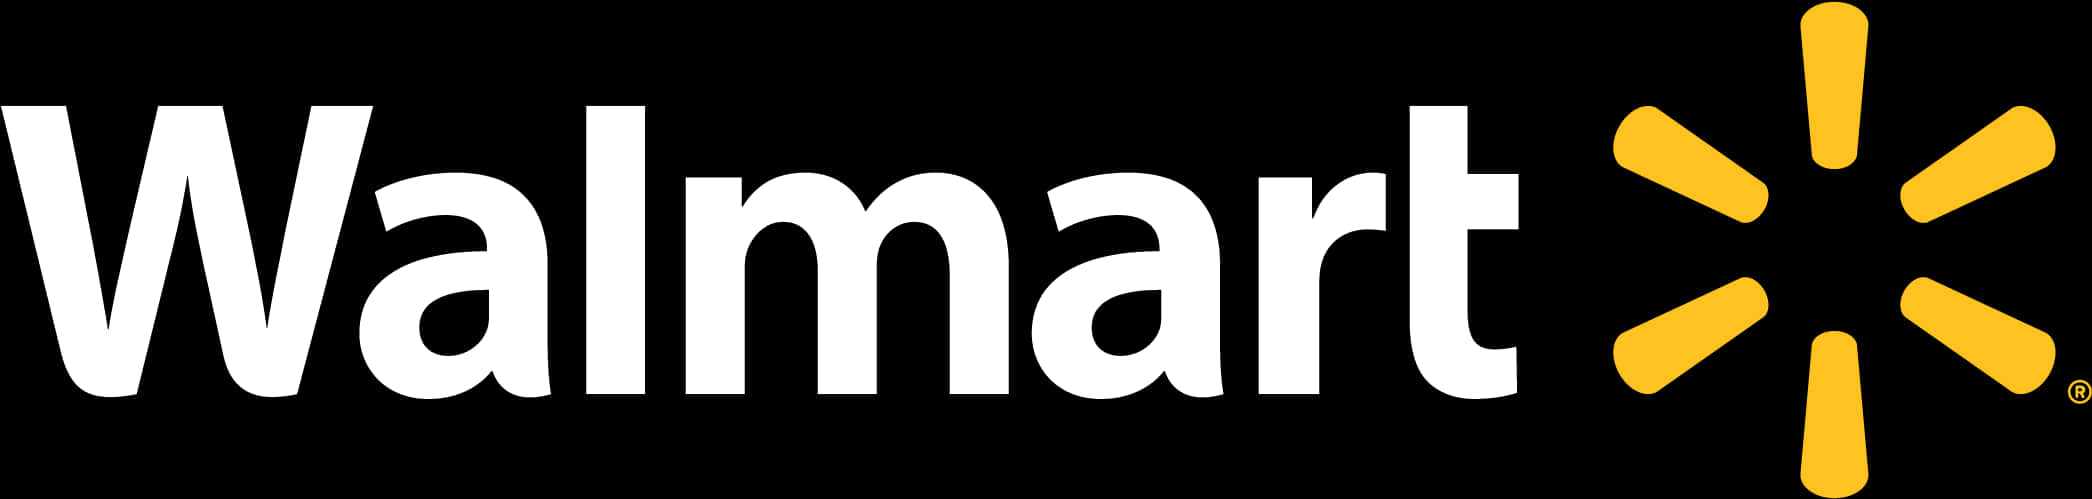 Walmart Logo Branding PNG image